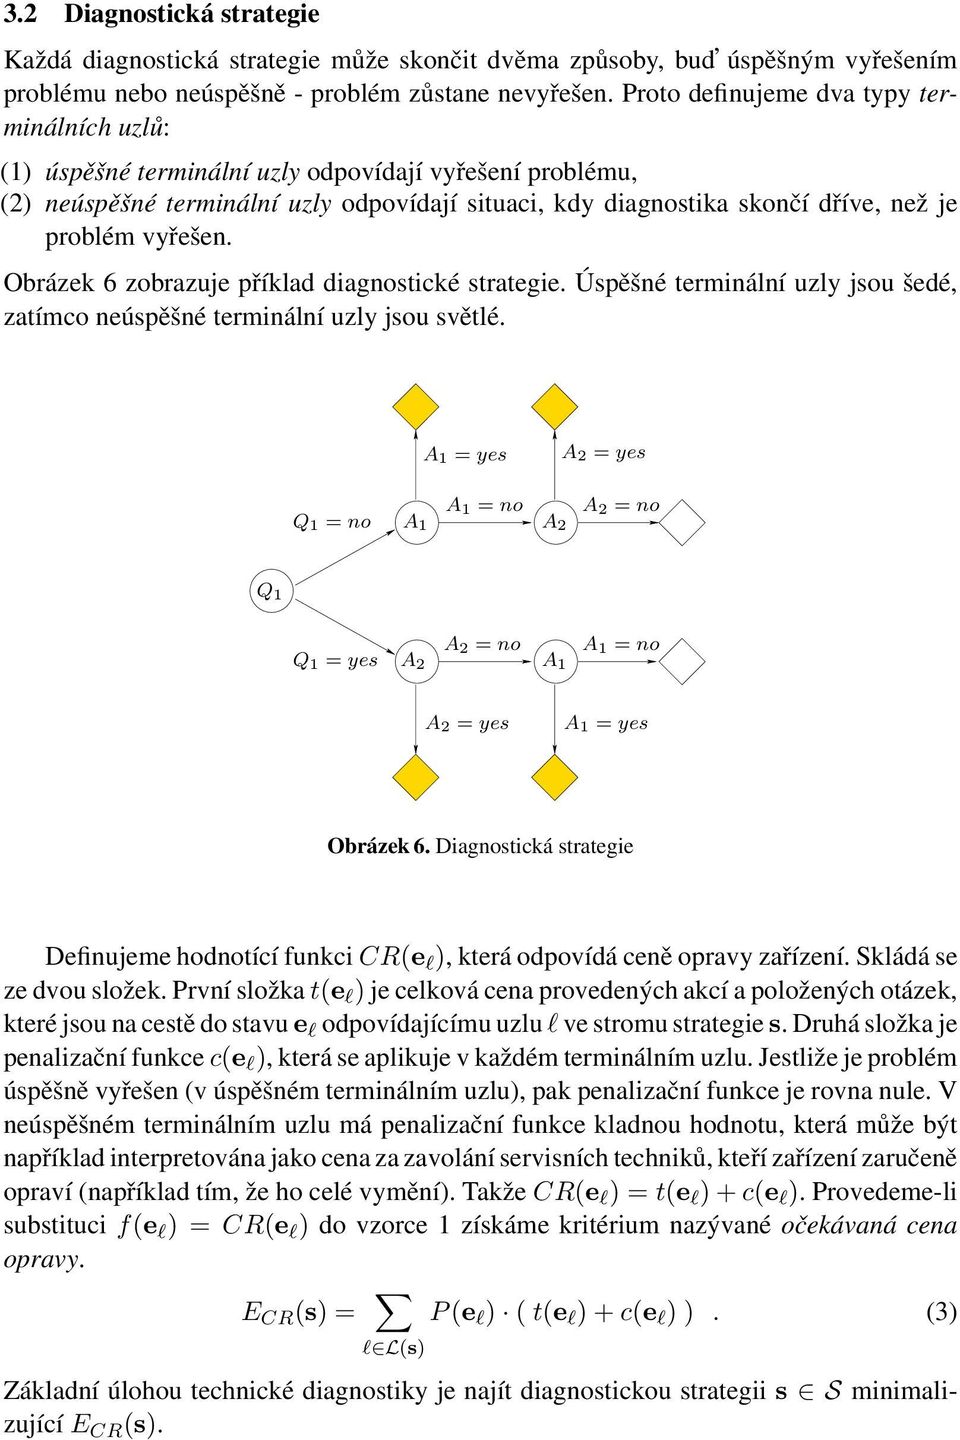 vyřešen. Obrázek 6 zobrazuje příklad diagnostické strategie. Úspěšné terminální uzly jsou šedé, zatímco neúspěšné terminální uzly jsou světlé.